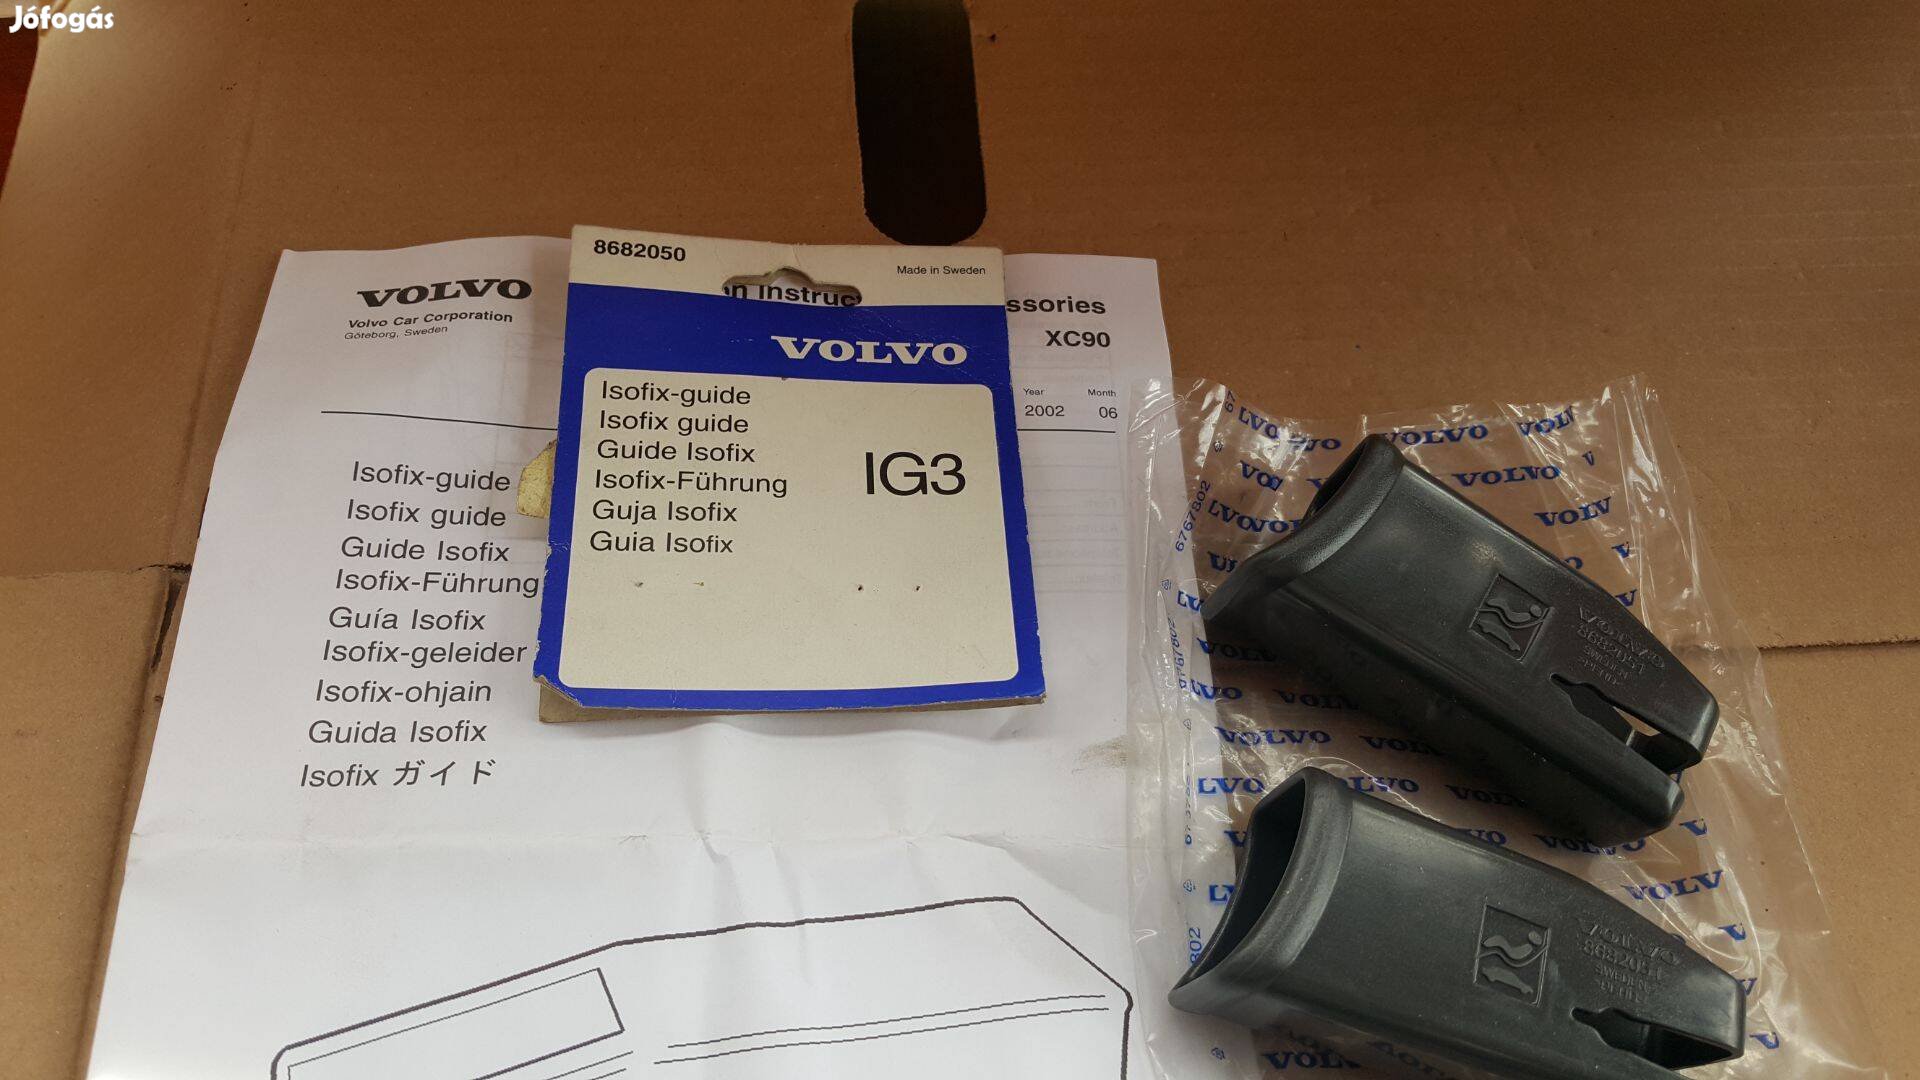 Volvo 8682050 XC90 isofix ülés védőkupakok